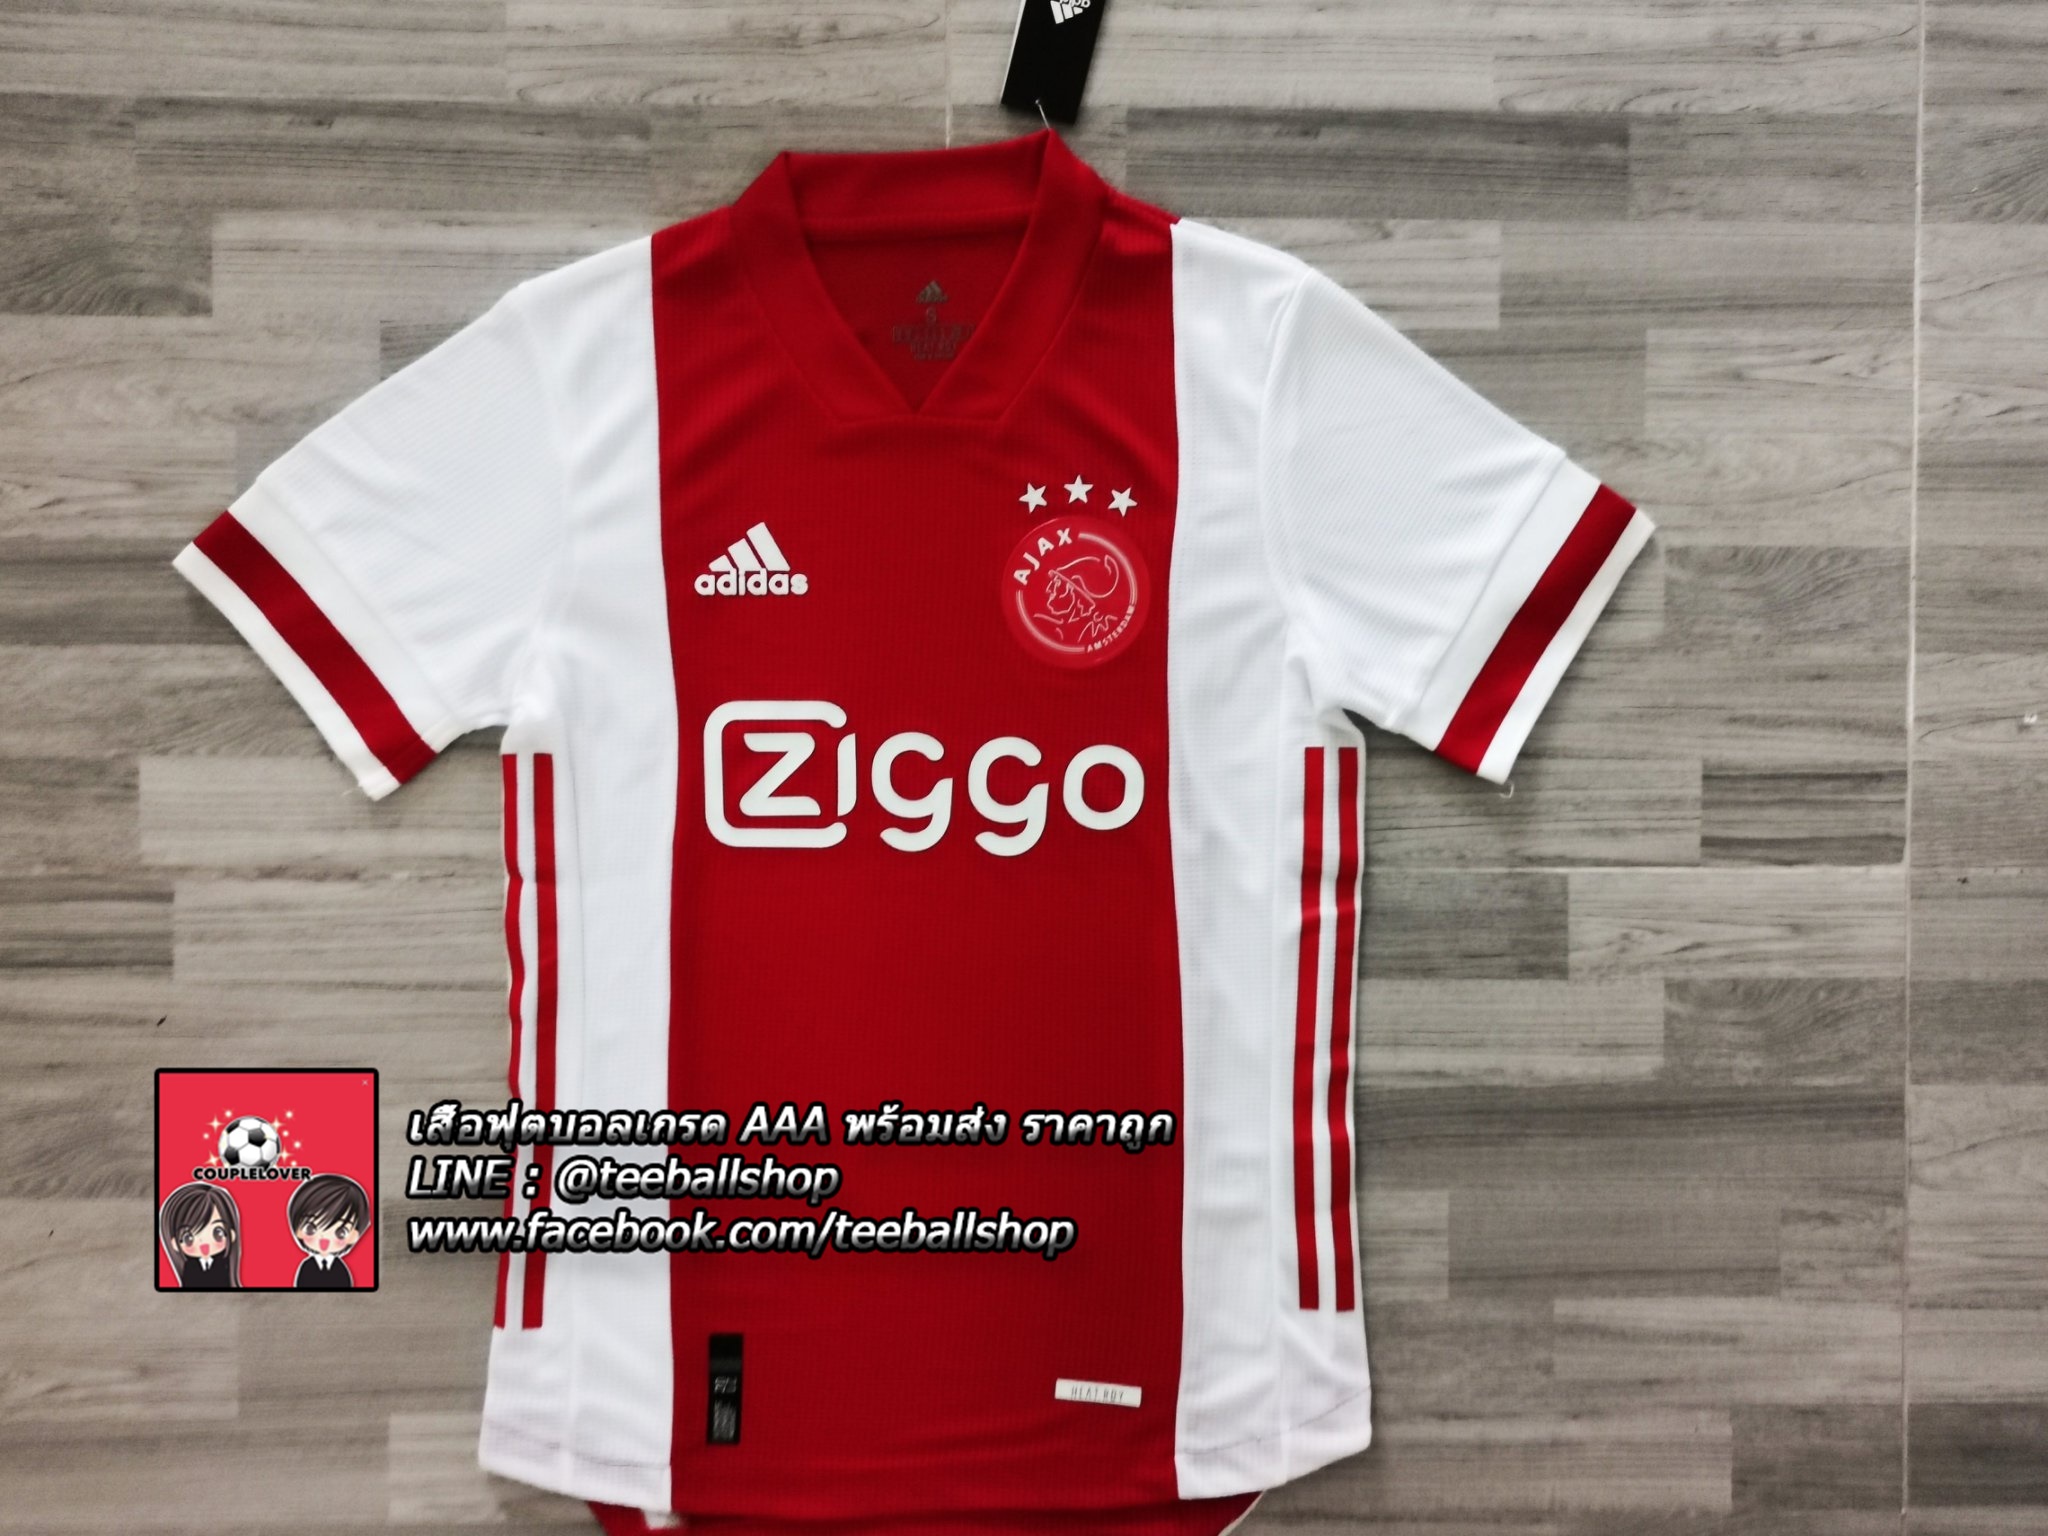 เสื้อฟุตบอล อาแจ็ค ชุดเหย้าเกรดนักเตะ 2020/21 Ajax Home Player Grade 2020/21